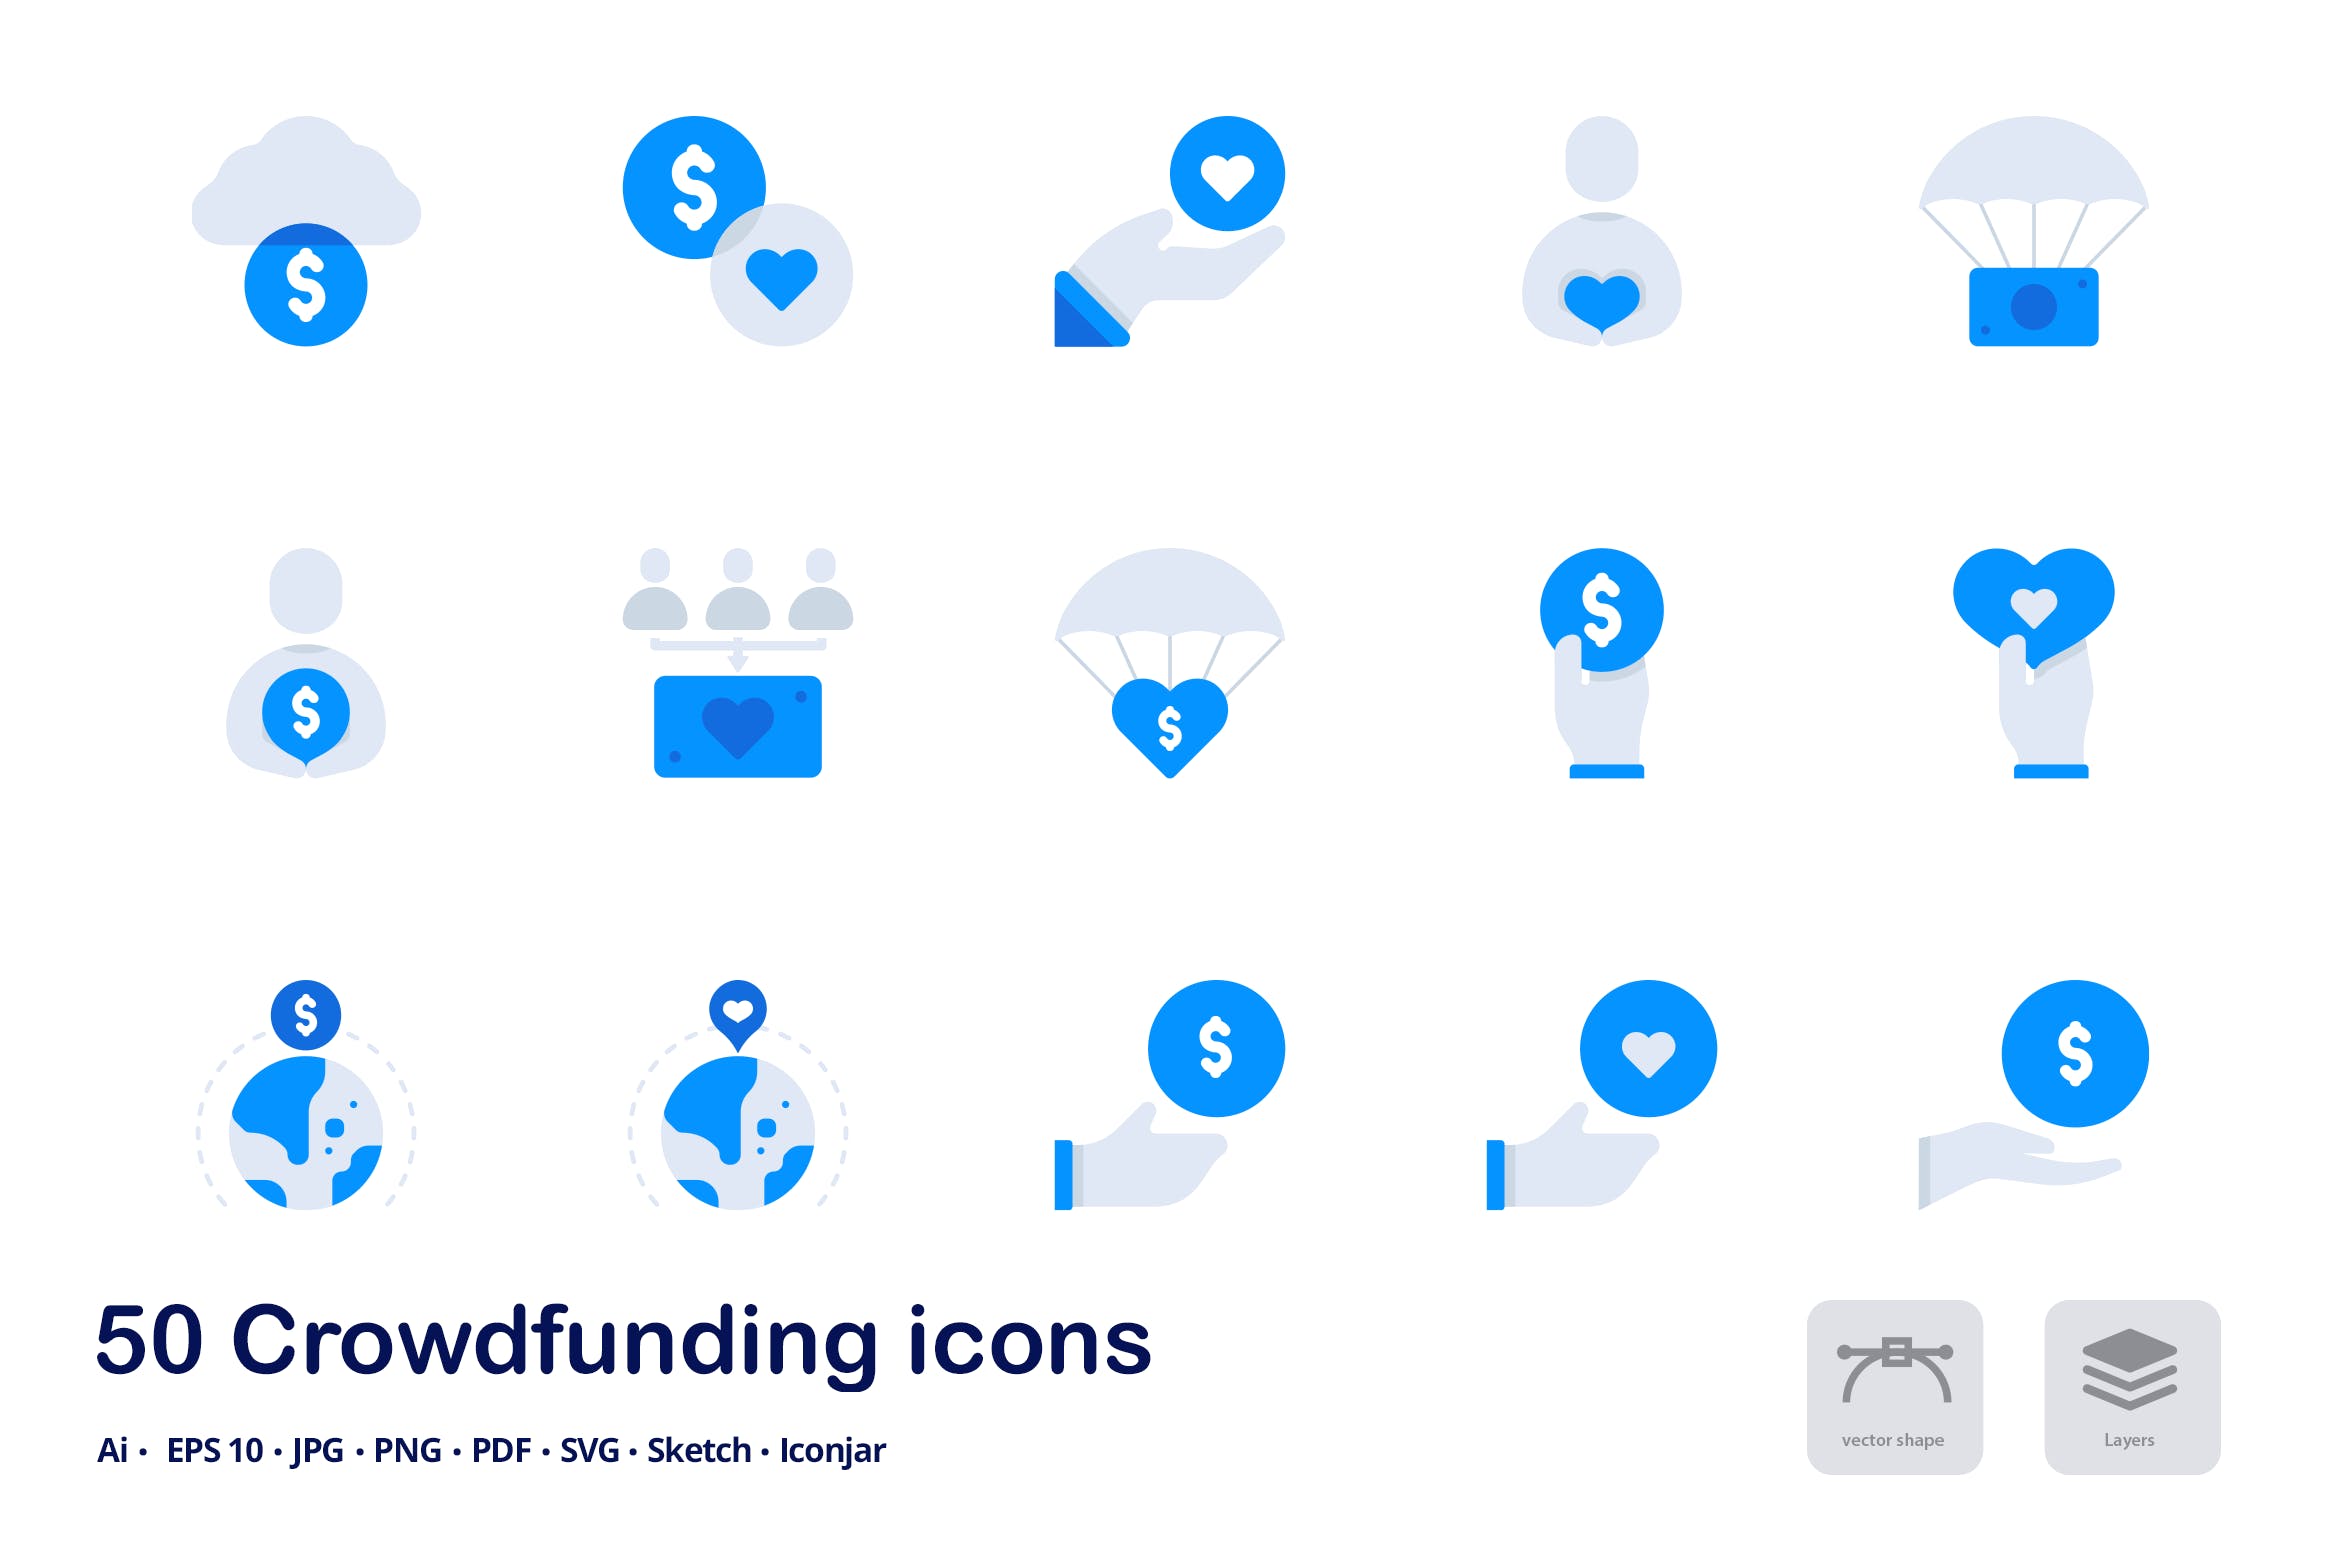 互联网众筹项目双色调扁平化矢量图标 Crowdfunding Accent Duo Tone Flat Icons插图